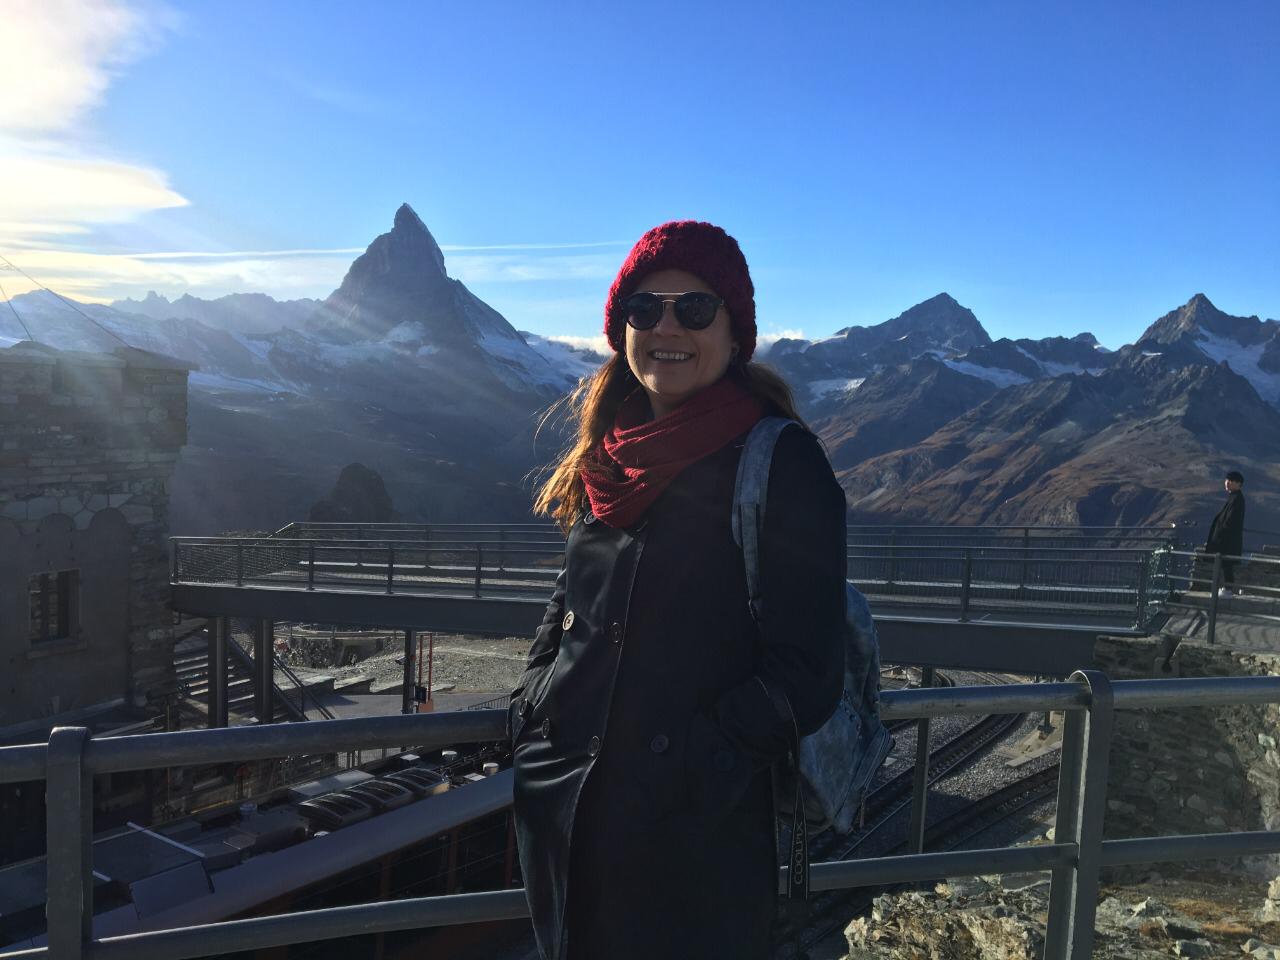 Gornergrat 360: a melhor vista do Matterhorn